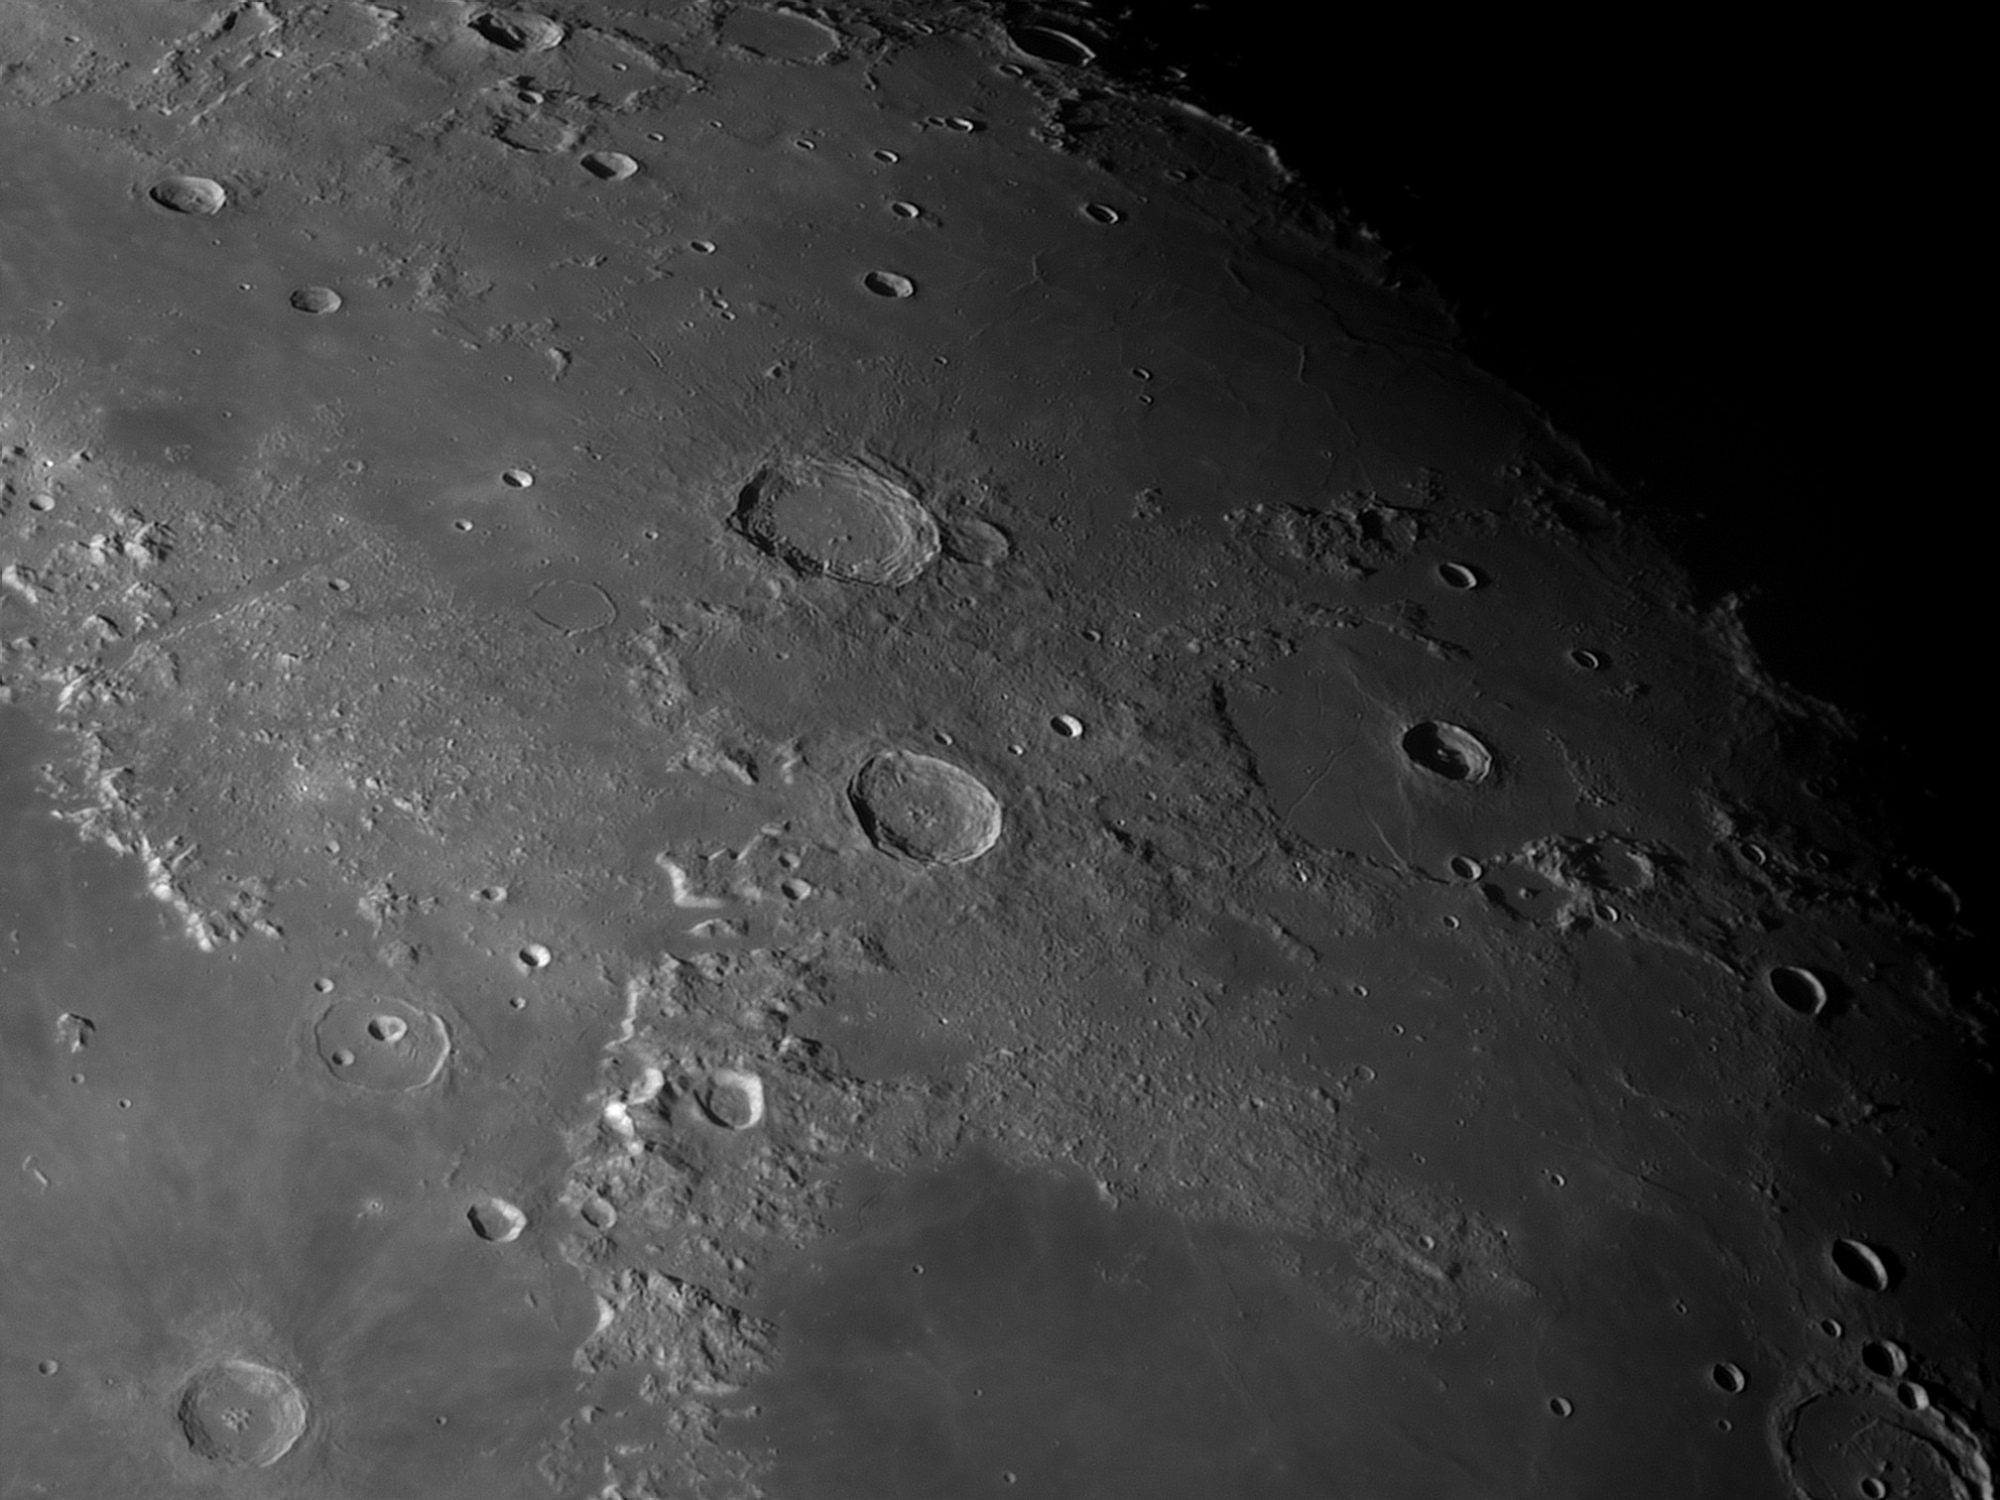 Lune-20201104_Aristote-baAS.thumb.jpg.66ba38906b3cd8a6946b3ac5d7566d5e.jpg